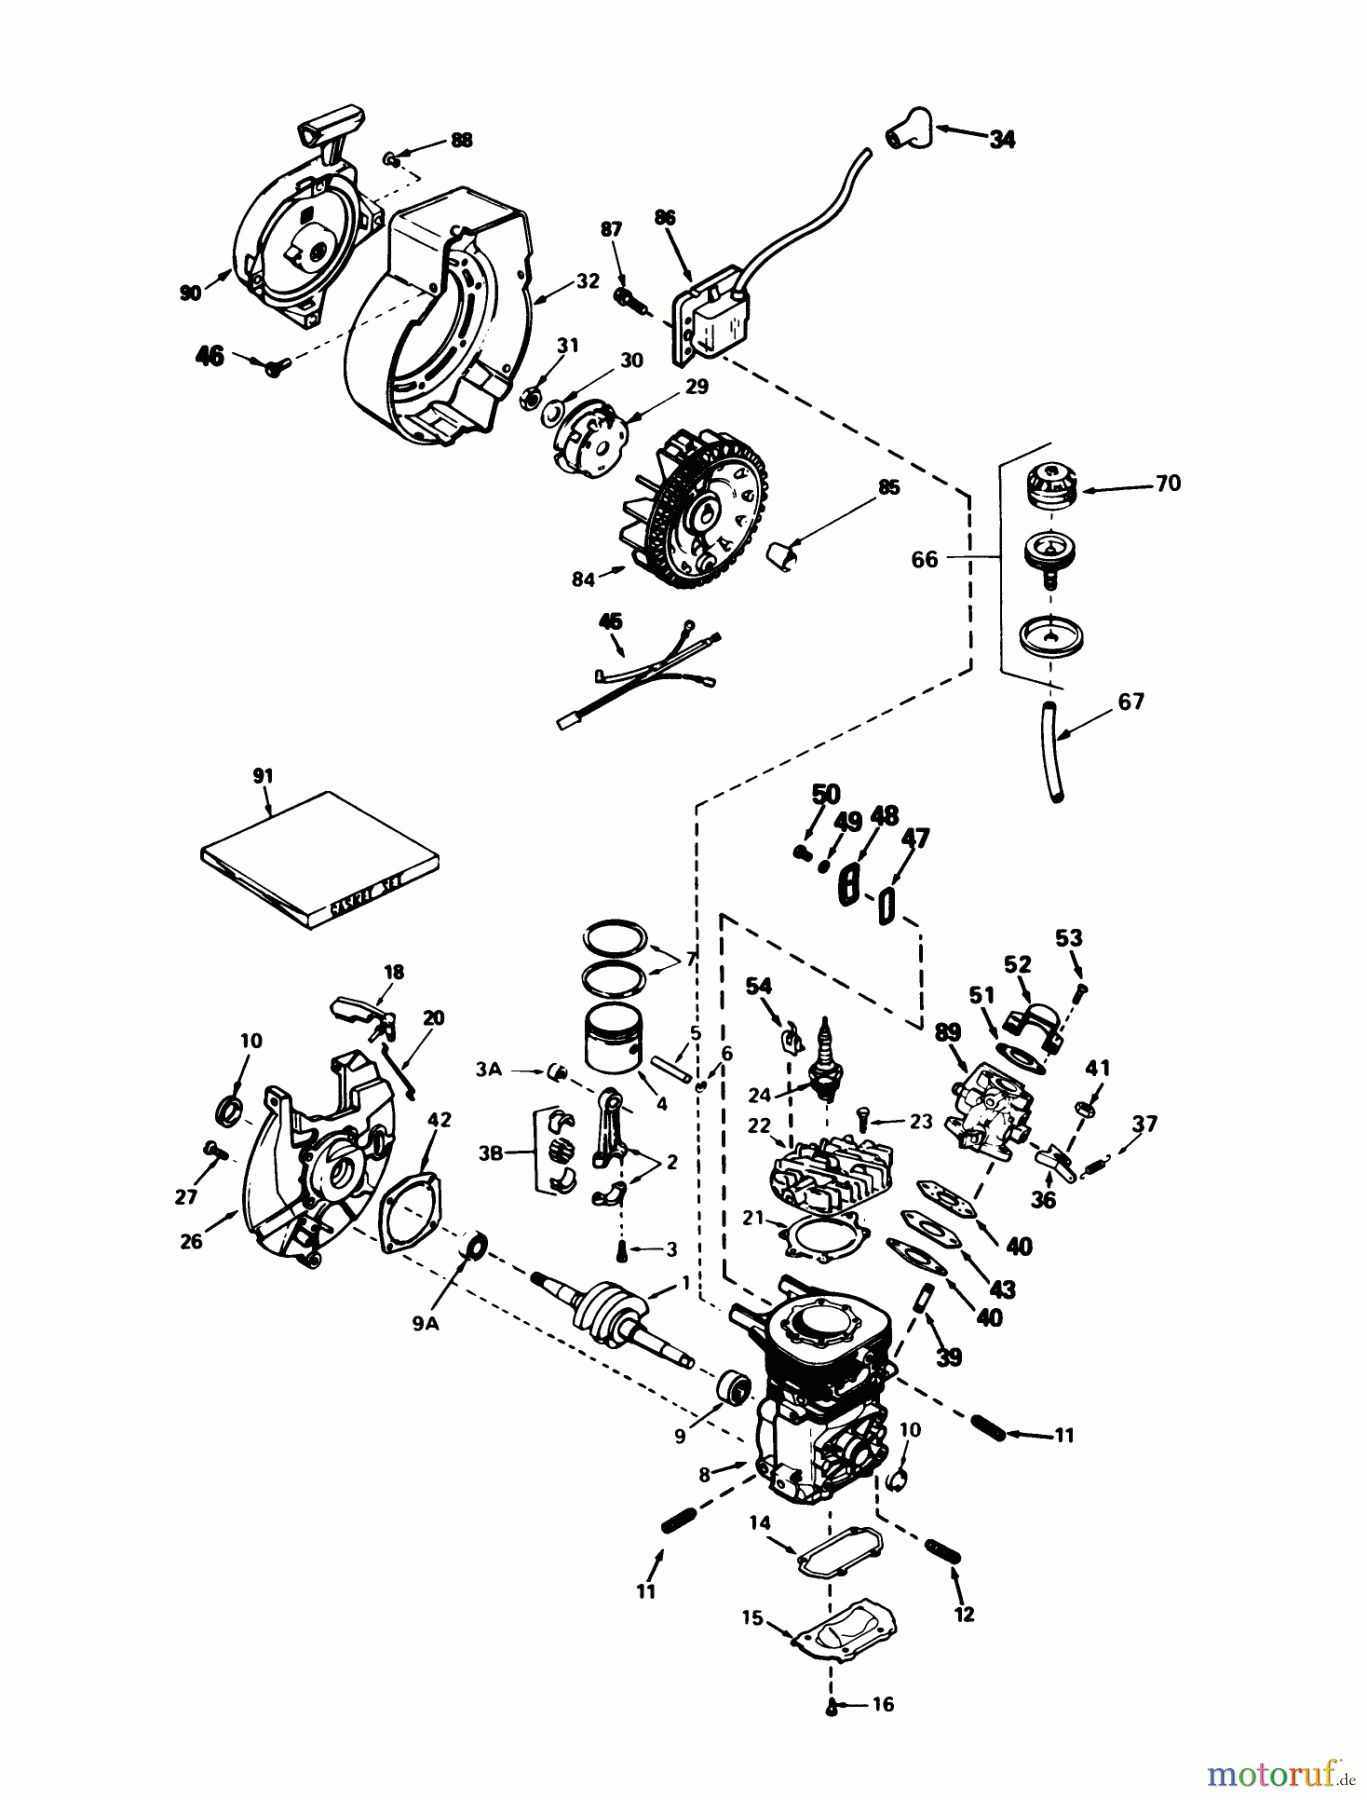  Toro Neu Snow Blowers/Snow Throwers Seite 1 38162C (S-620) - Toro S-620 Snowthrower, 1986 (6000001-6999999) ENGINE TECUMSEH MODEL AH-600 TYPE 1623-A